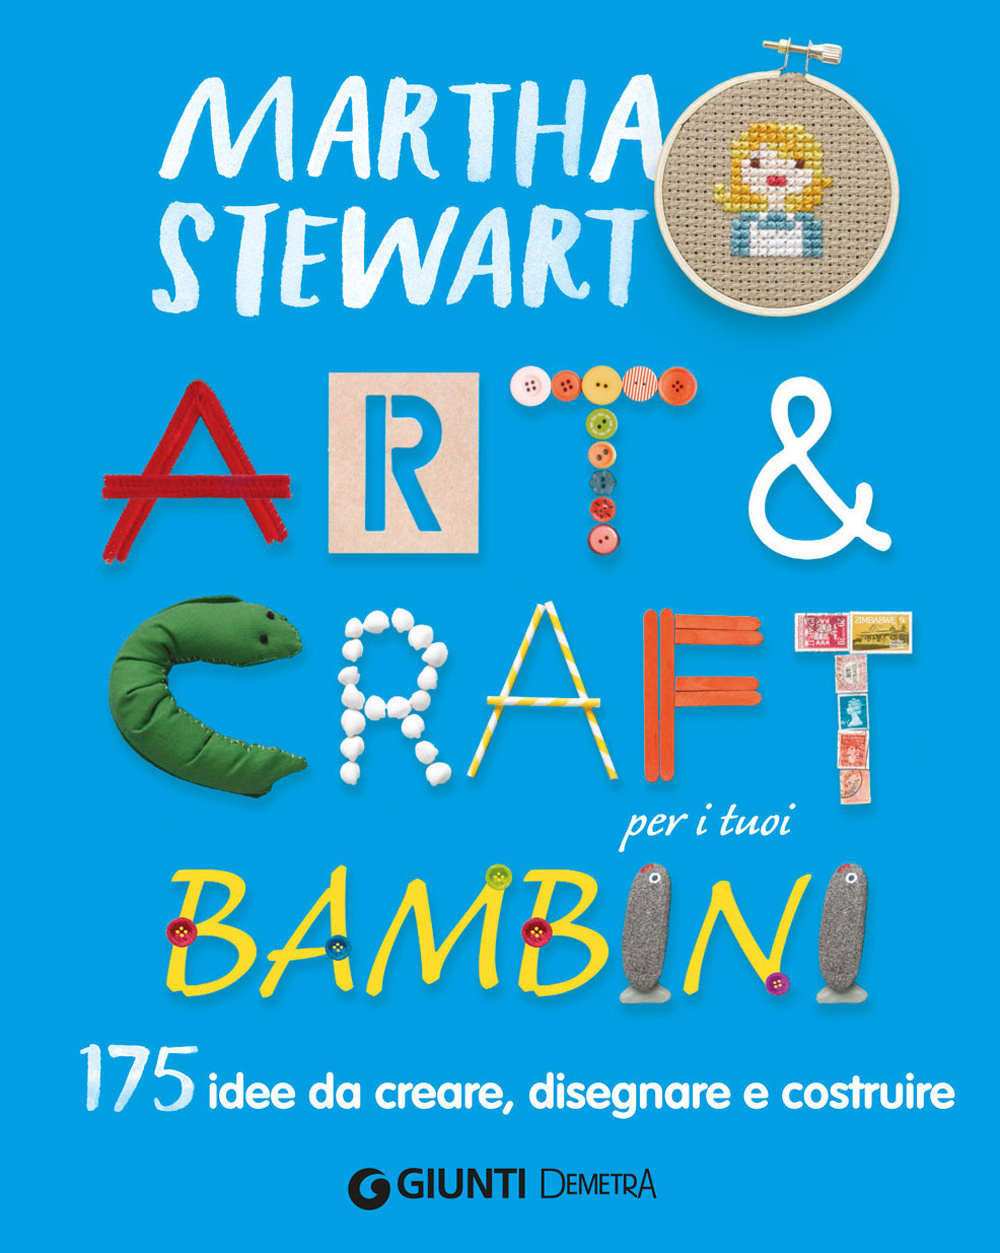 Art & craft per i tuoi bambini